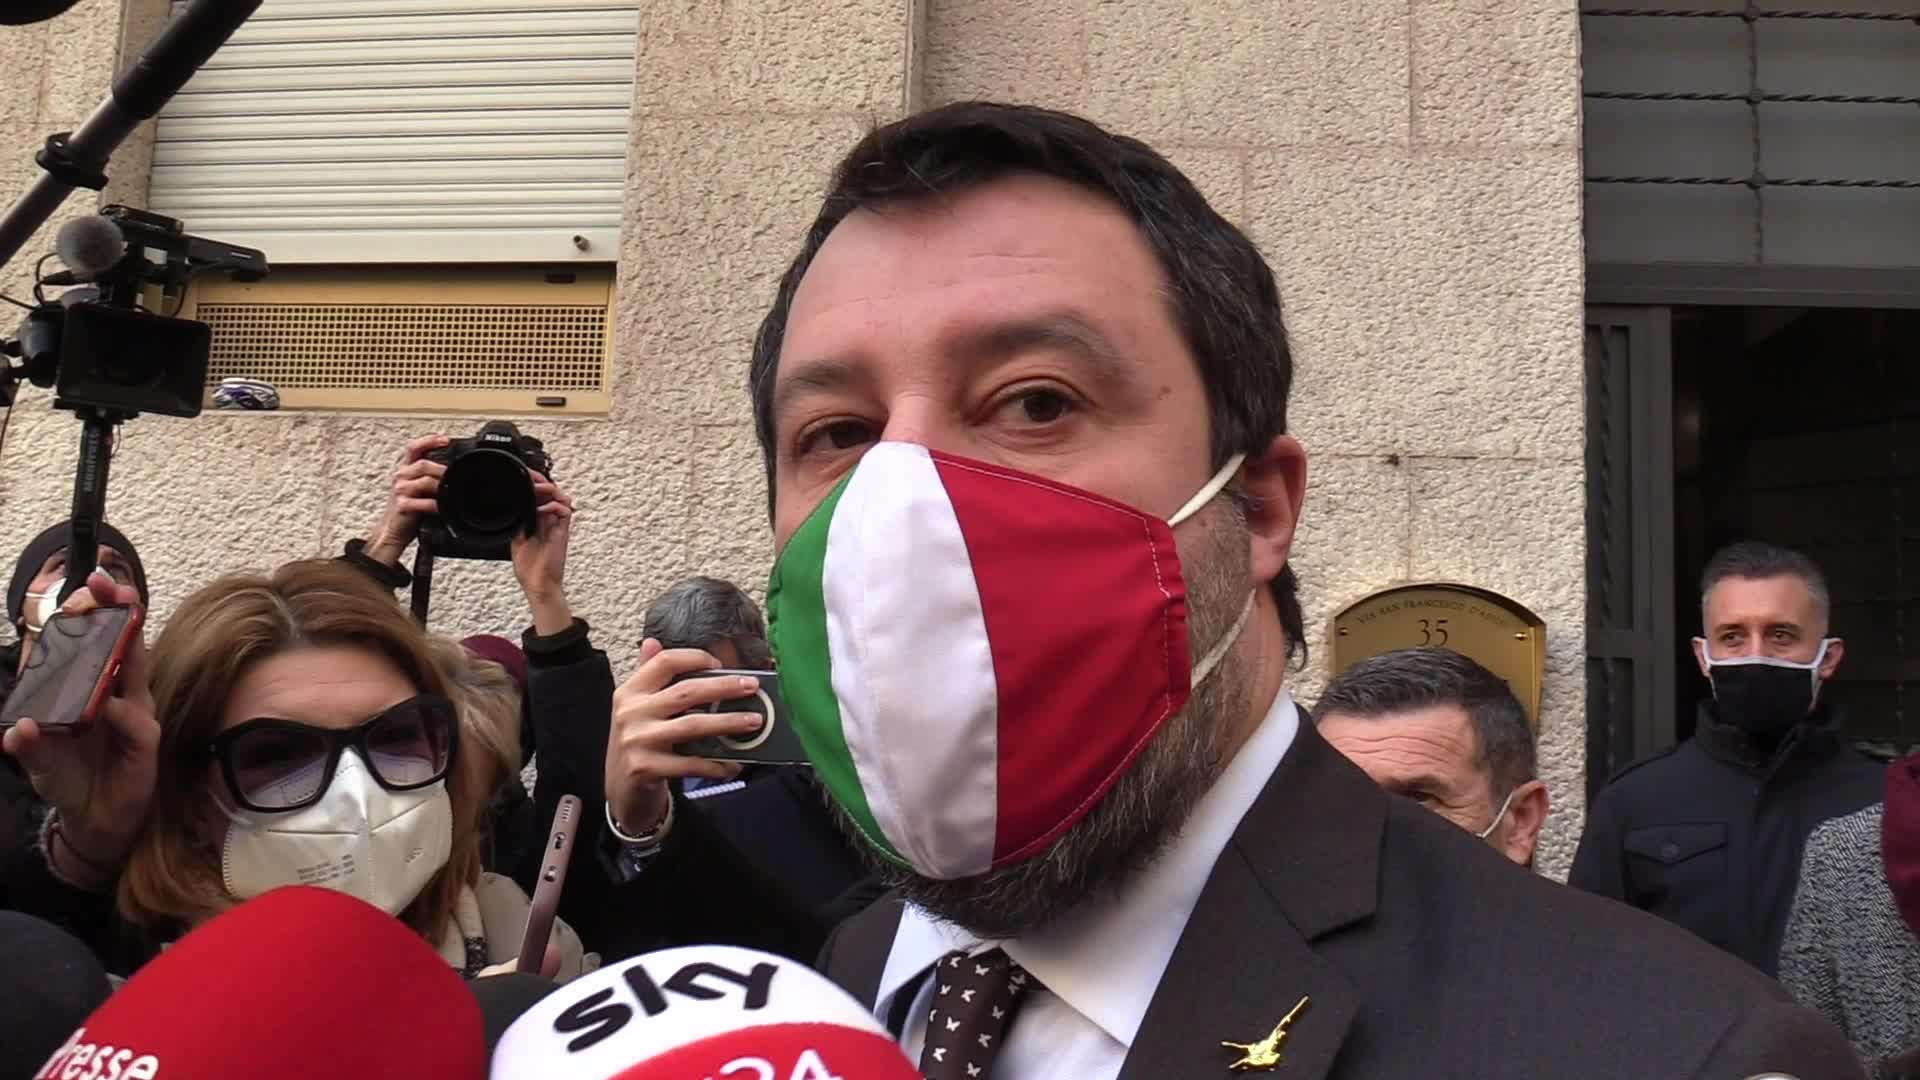 Governo, Salvini: "Conte Ter? Teatrino osceno"